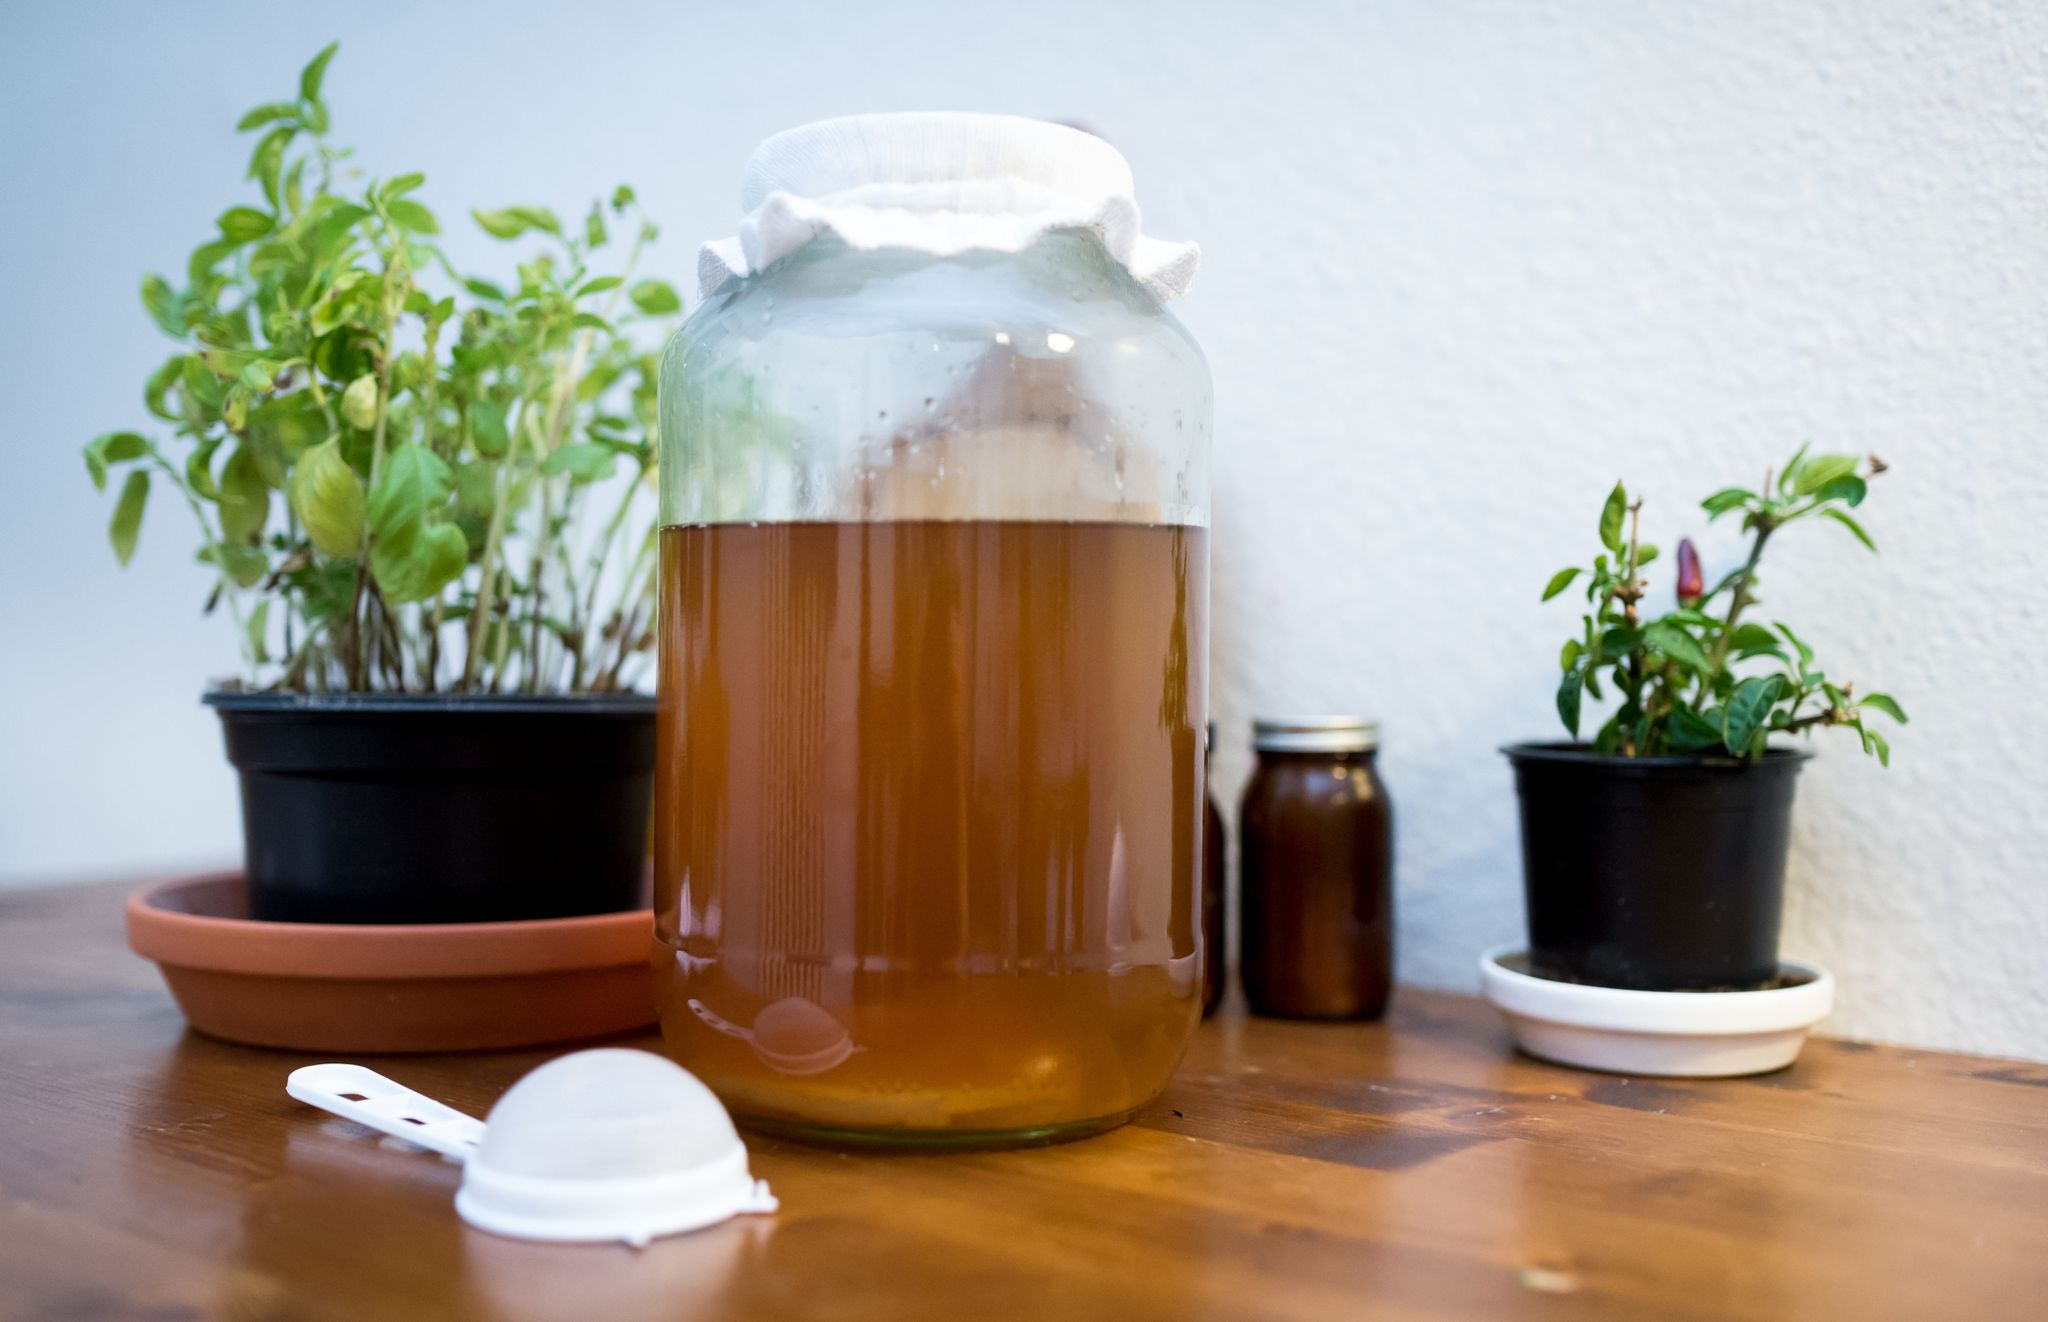 Kombucha besteht aus fermentiertem Tee. Das Getränk soll gesundheitsfördernd sein, doch wissenschaftlich nachgewiesen wurde diese Wirkung bislang nicht.